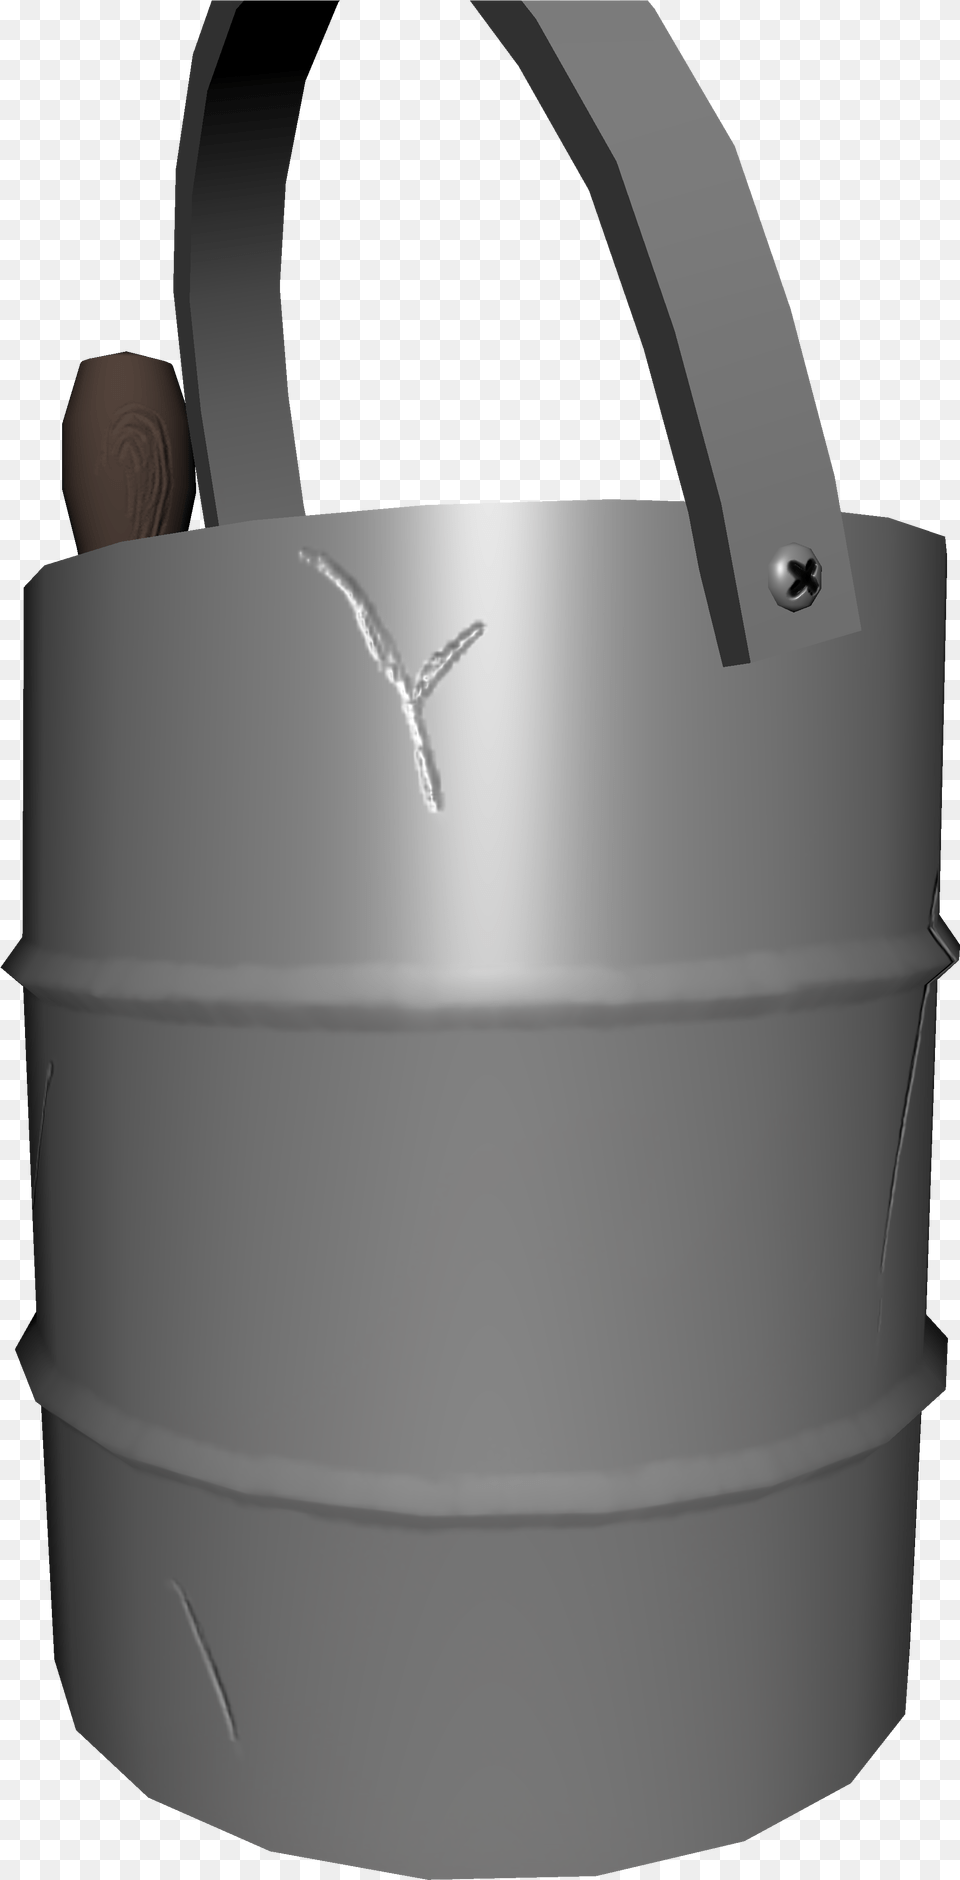 Bucket 1 Bucket 2 Bucket Bump Bucket Texture Paint Handbag, Bottle, Shaker Png Image